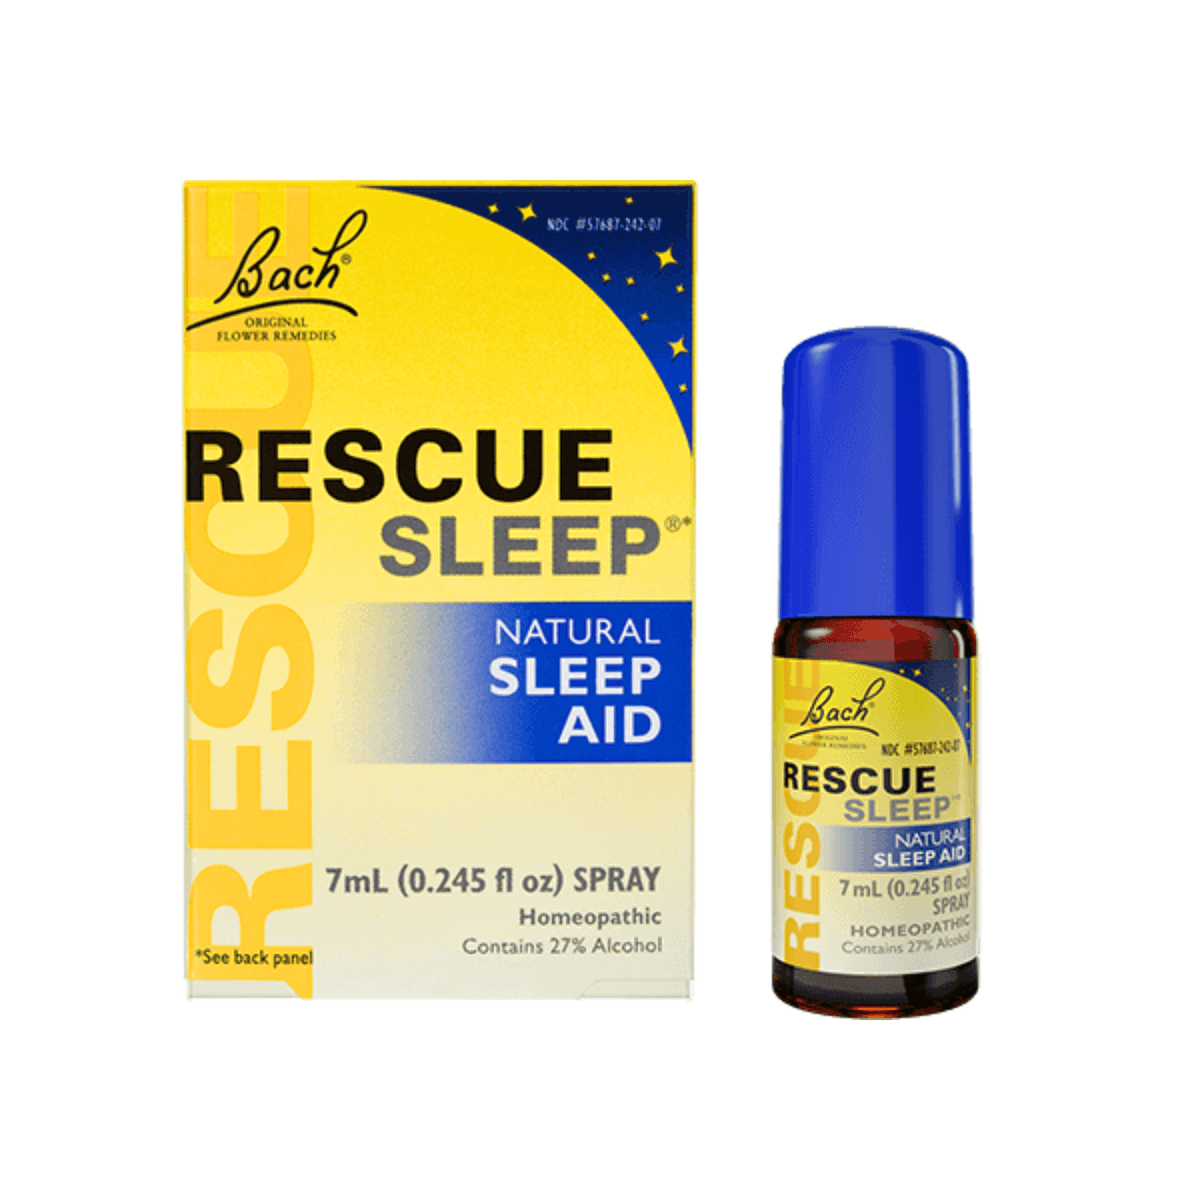 Primary Image of Rescue Sleep Spray